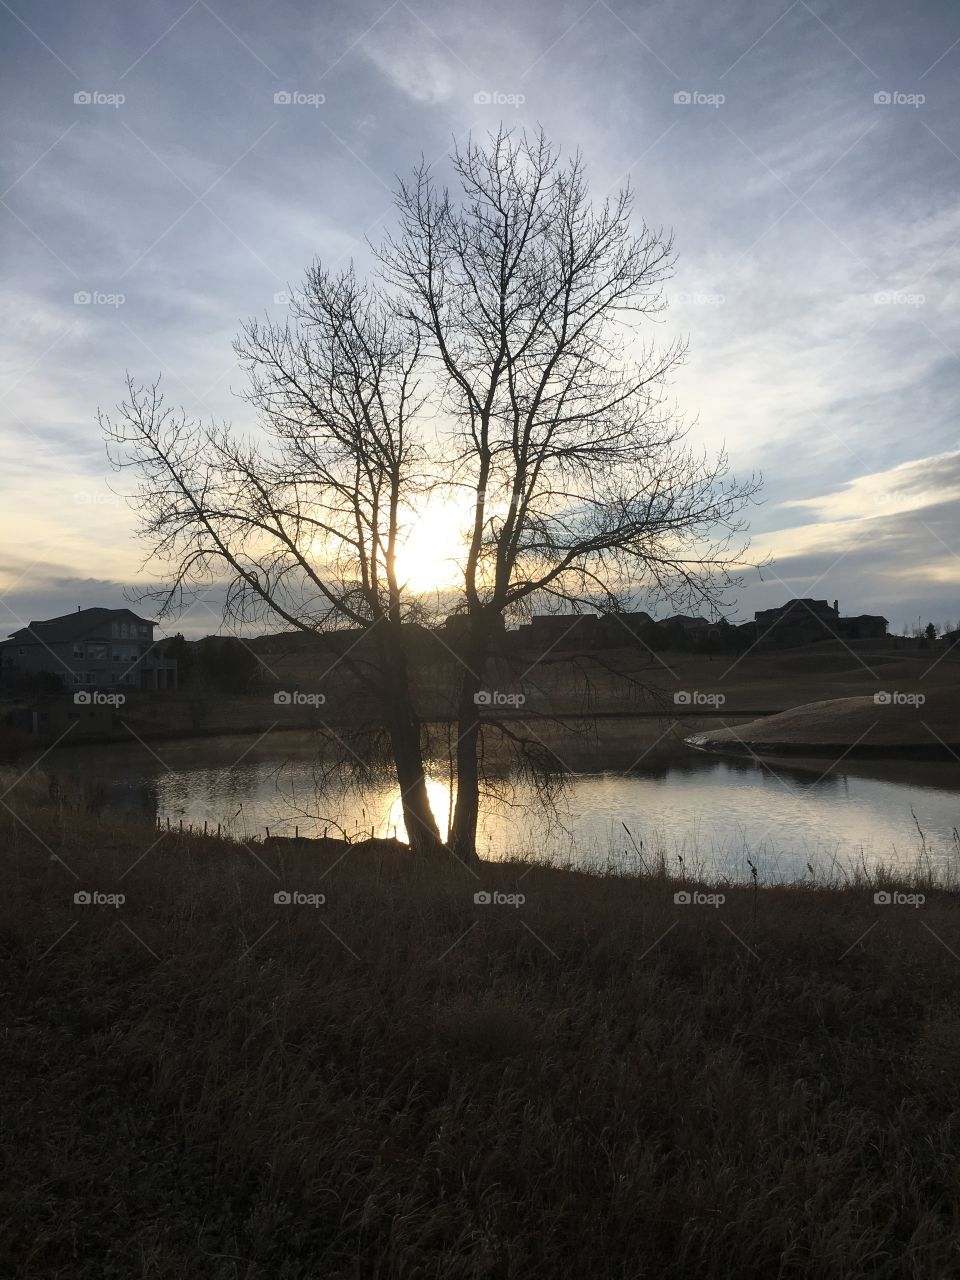 Sunrise on the pond